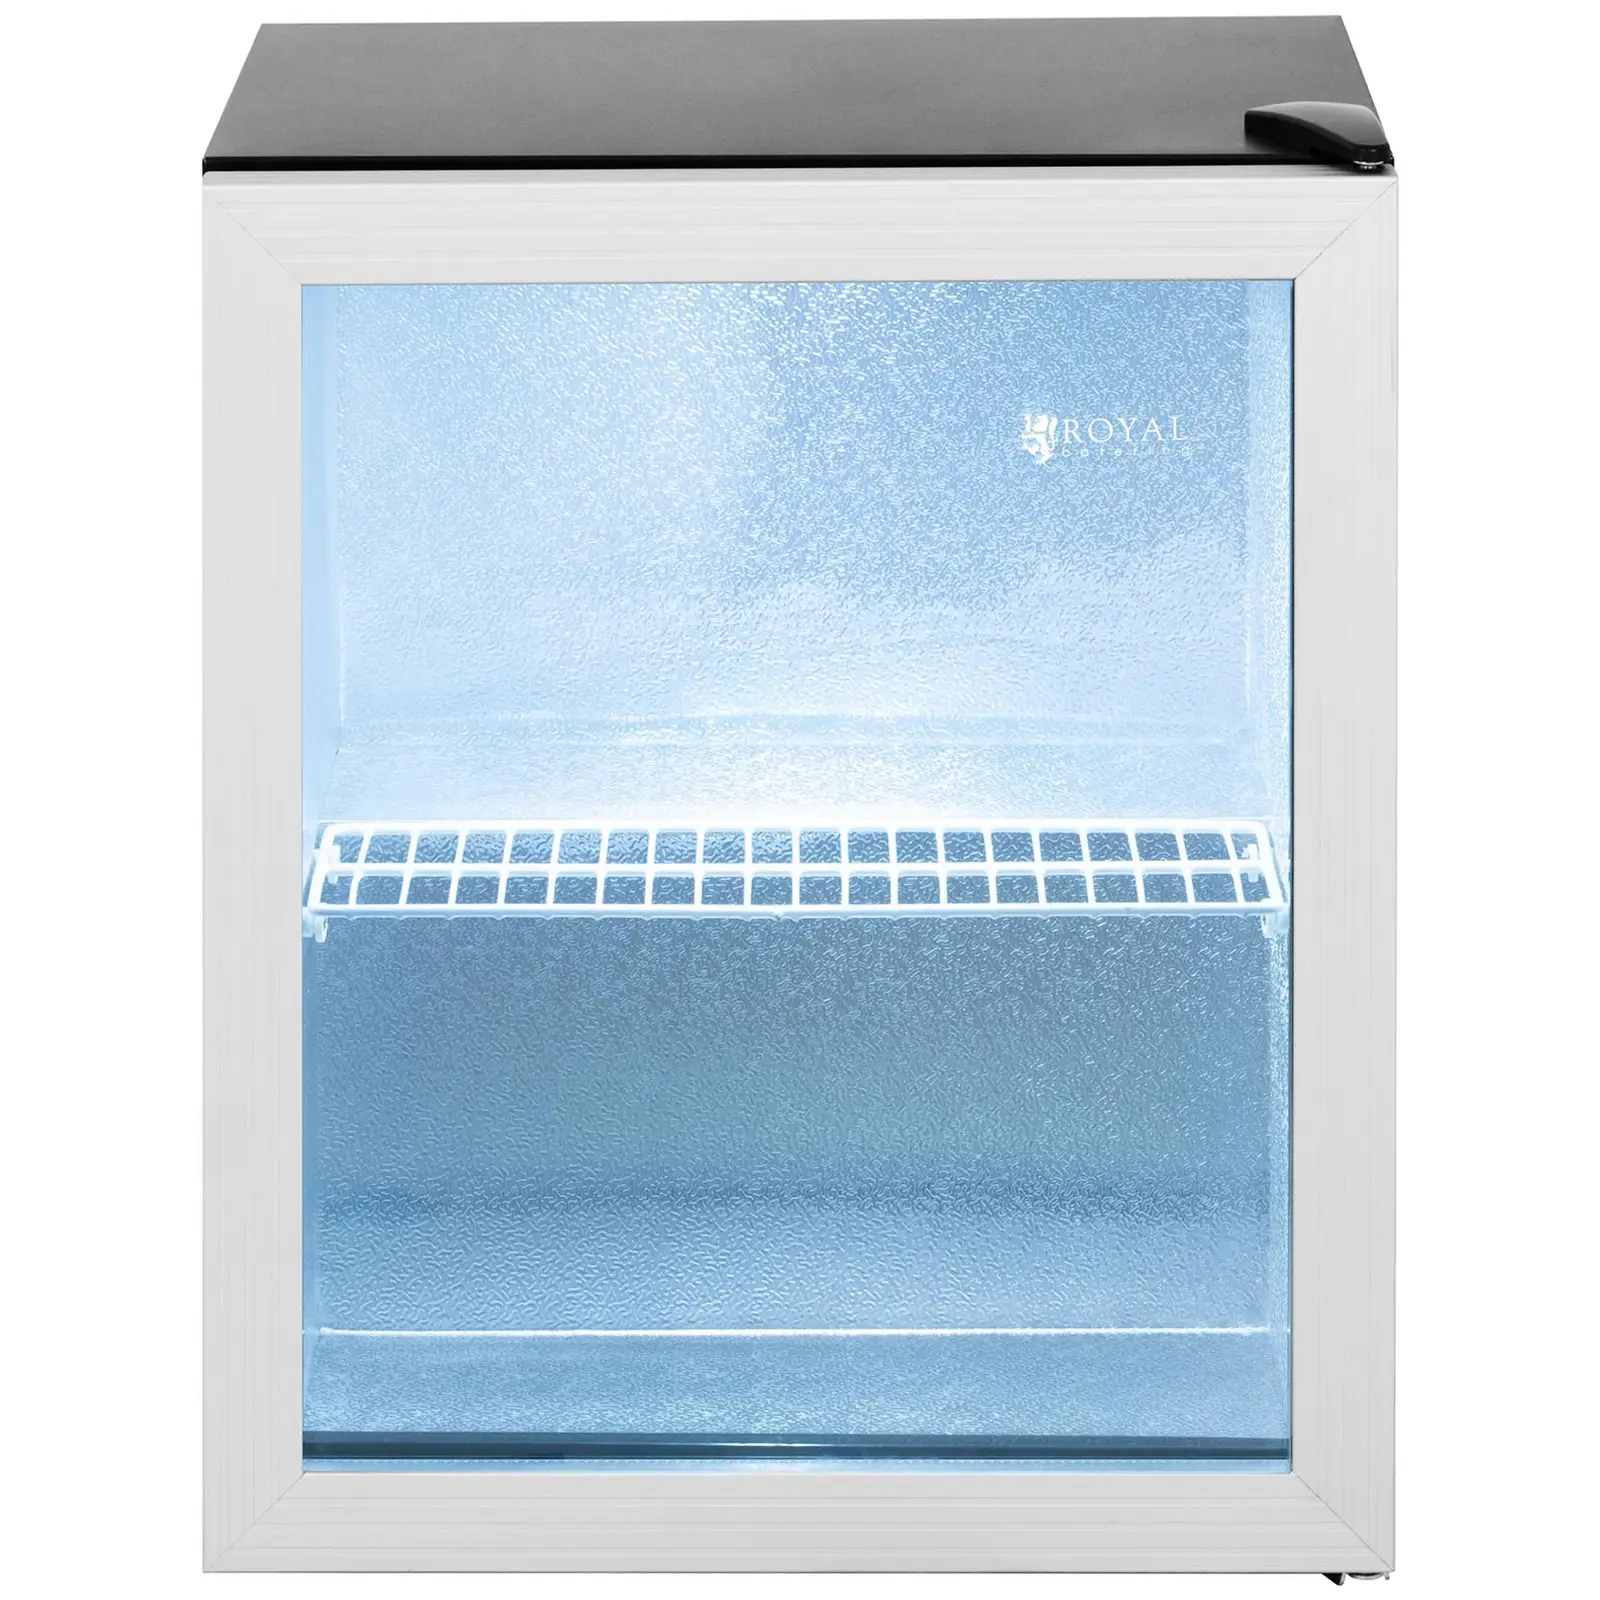 Arca refrigeradora - 54 l - aço inoxidável